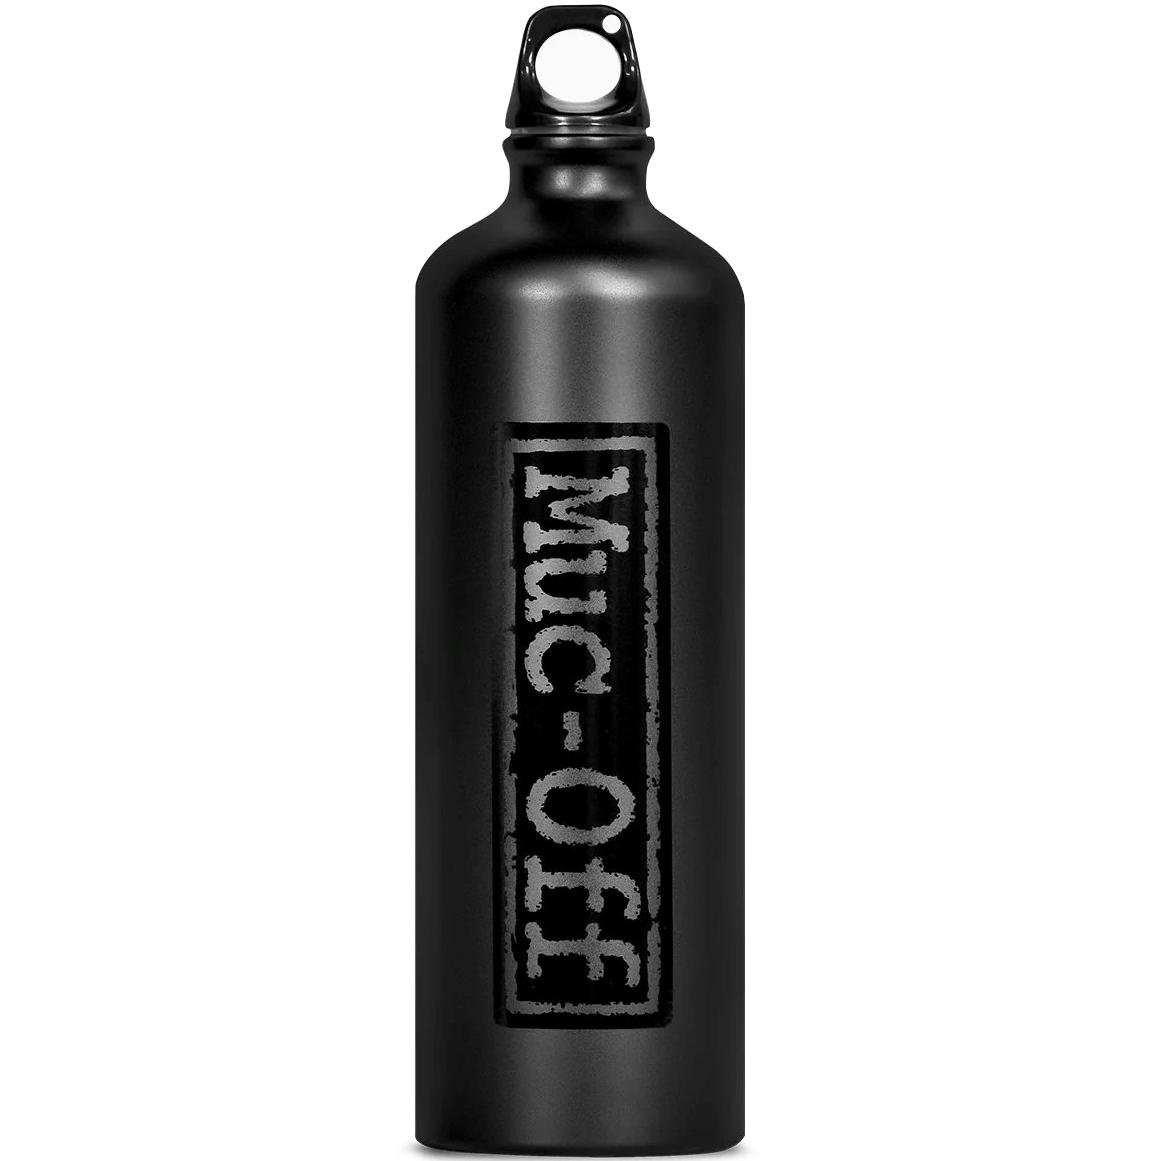 Produktbild von Muc-Off Project Green Aluminium Flasche - schwarz